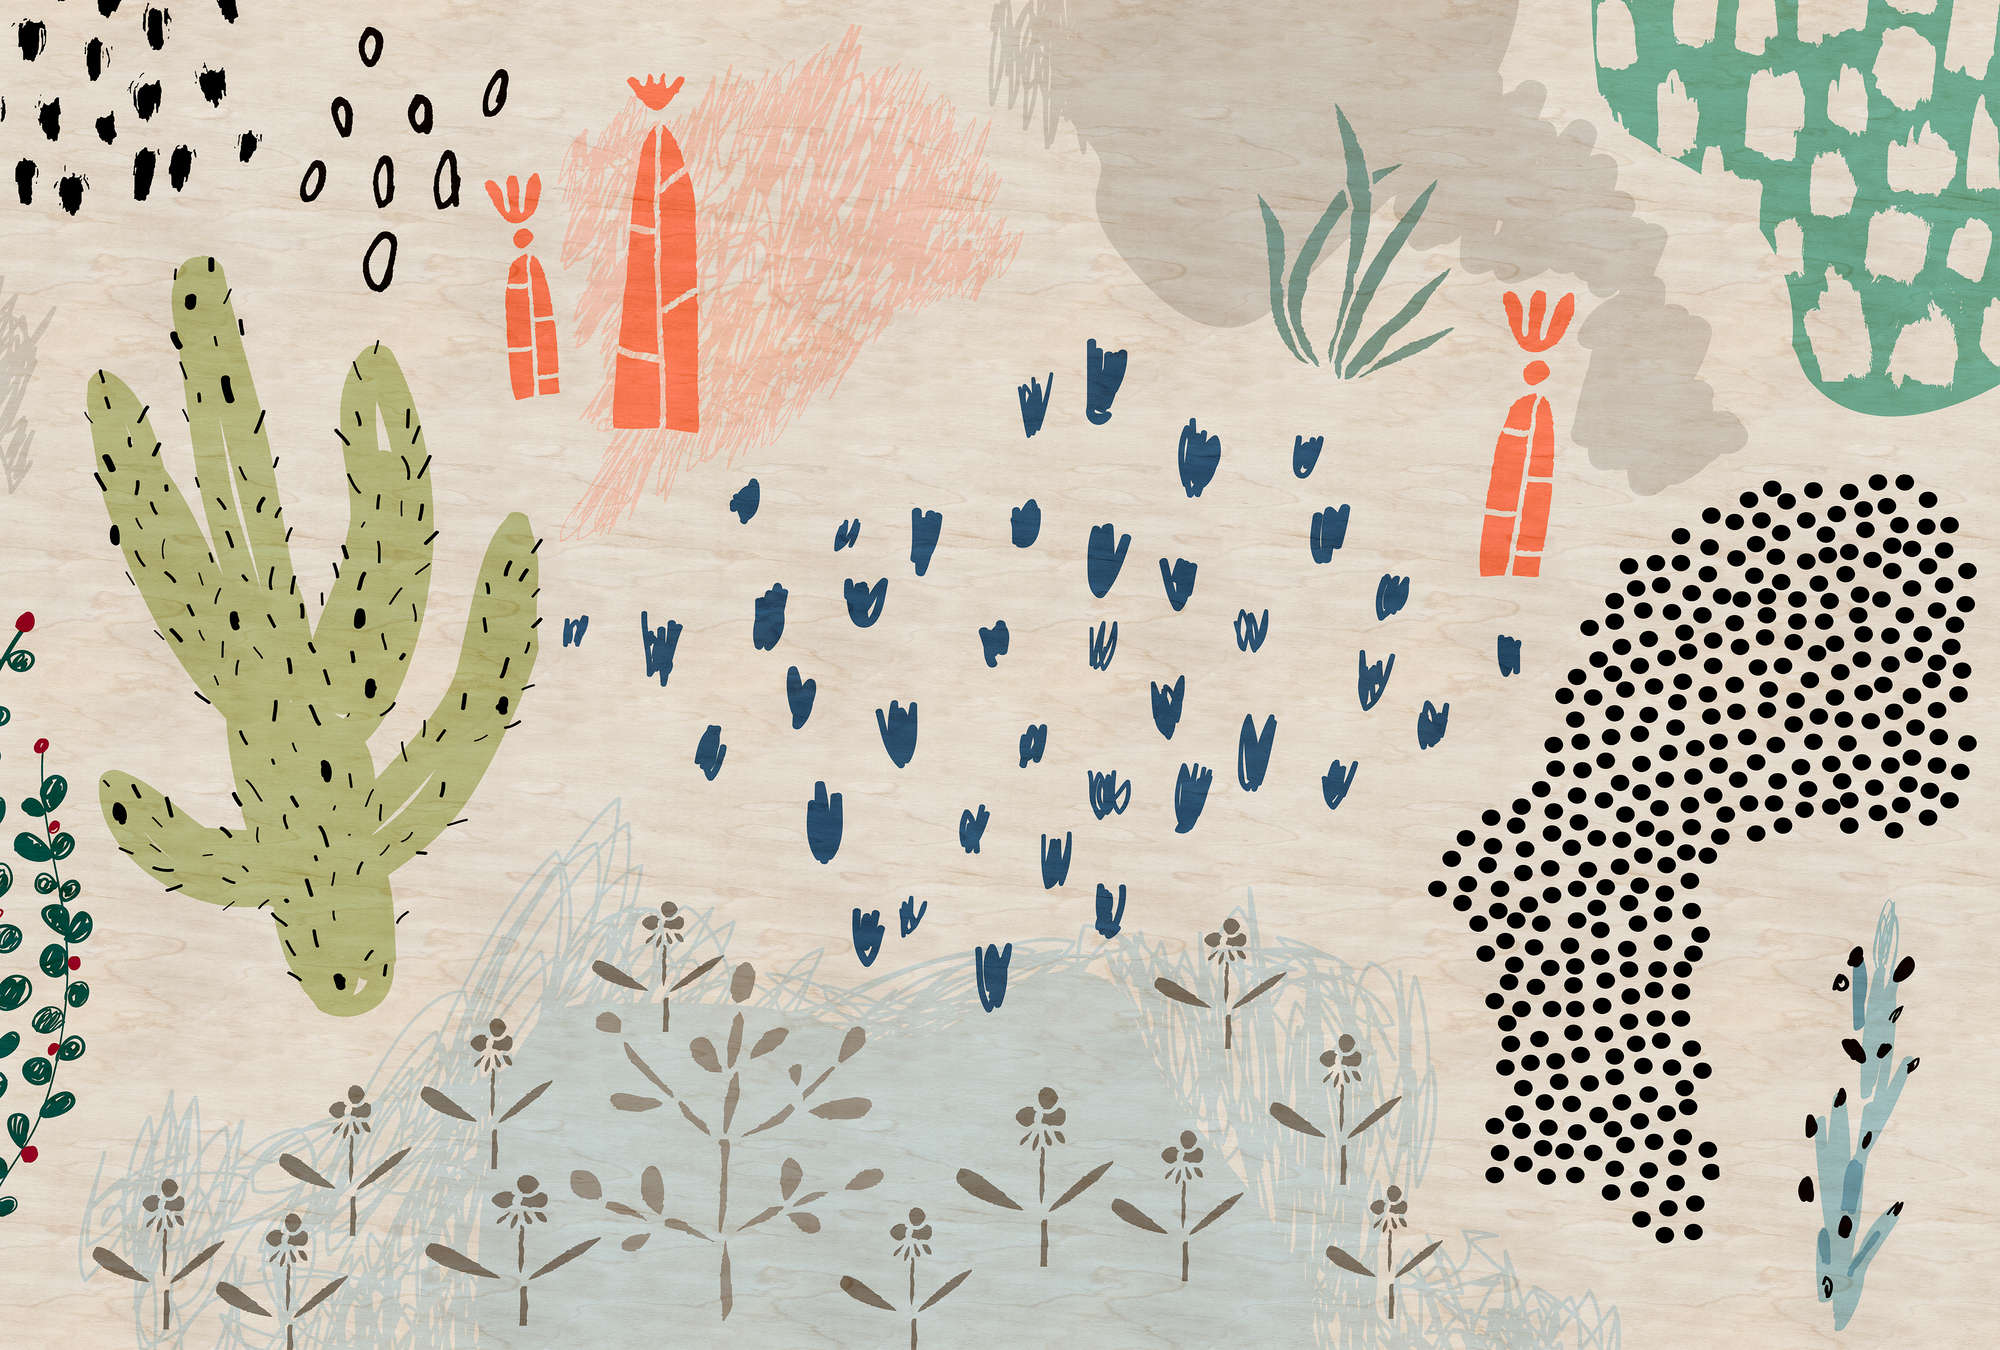             Crayon garden2 - behang kinderkamer in multiplex structuur, naïeve kunst - Beige, Blauw | Mat glad vlies
        